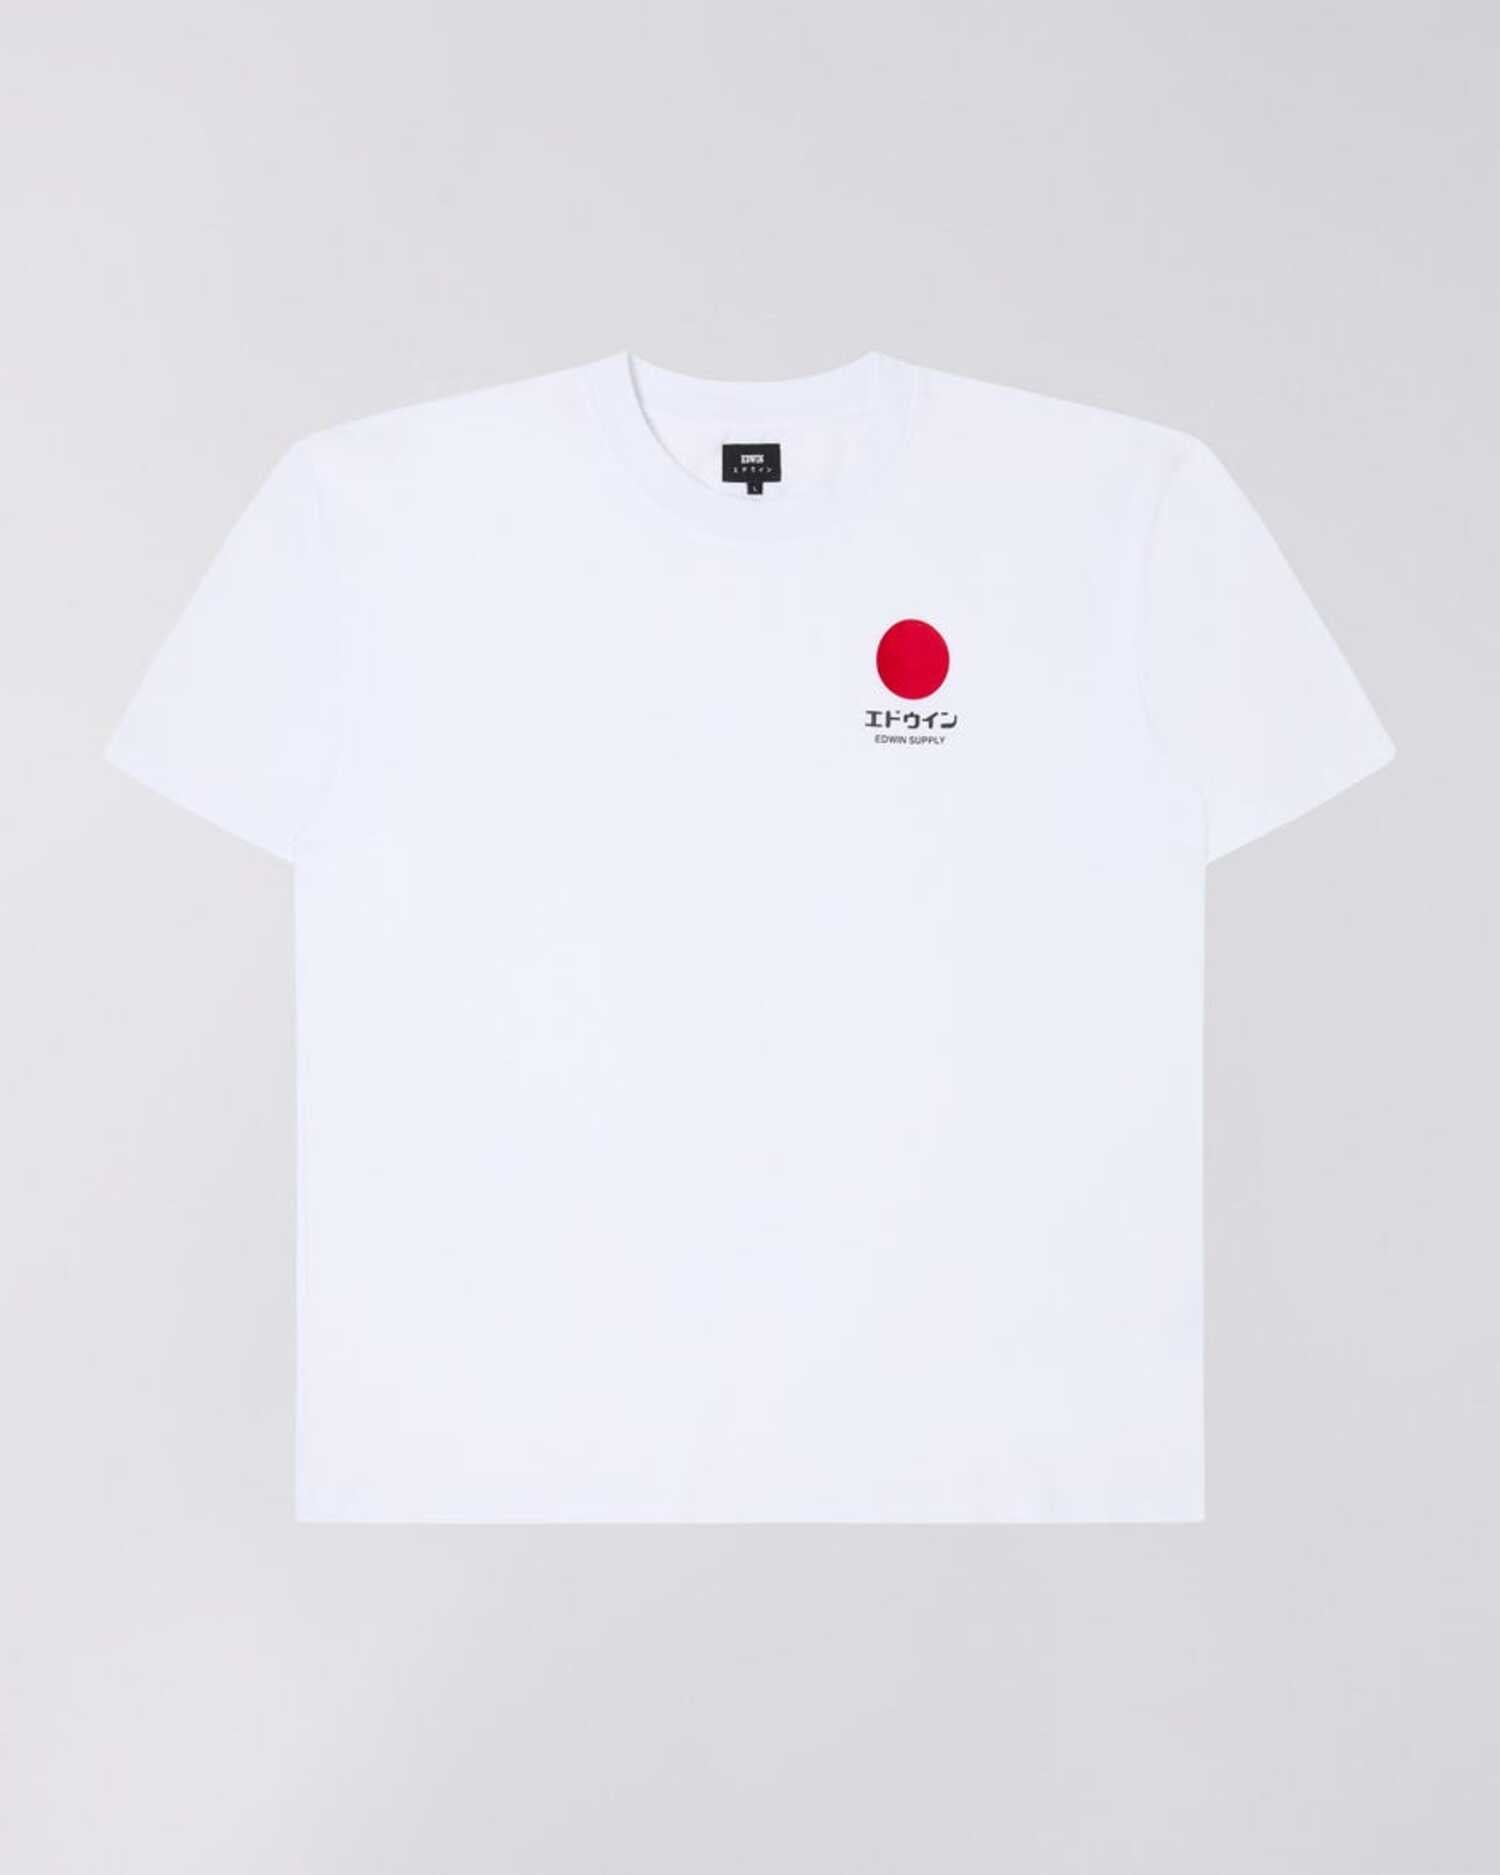 Edwin - Japanese sun supply - T-shirt - Marit